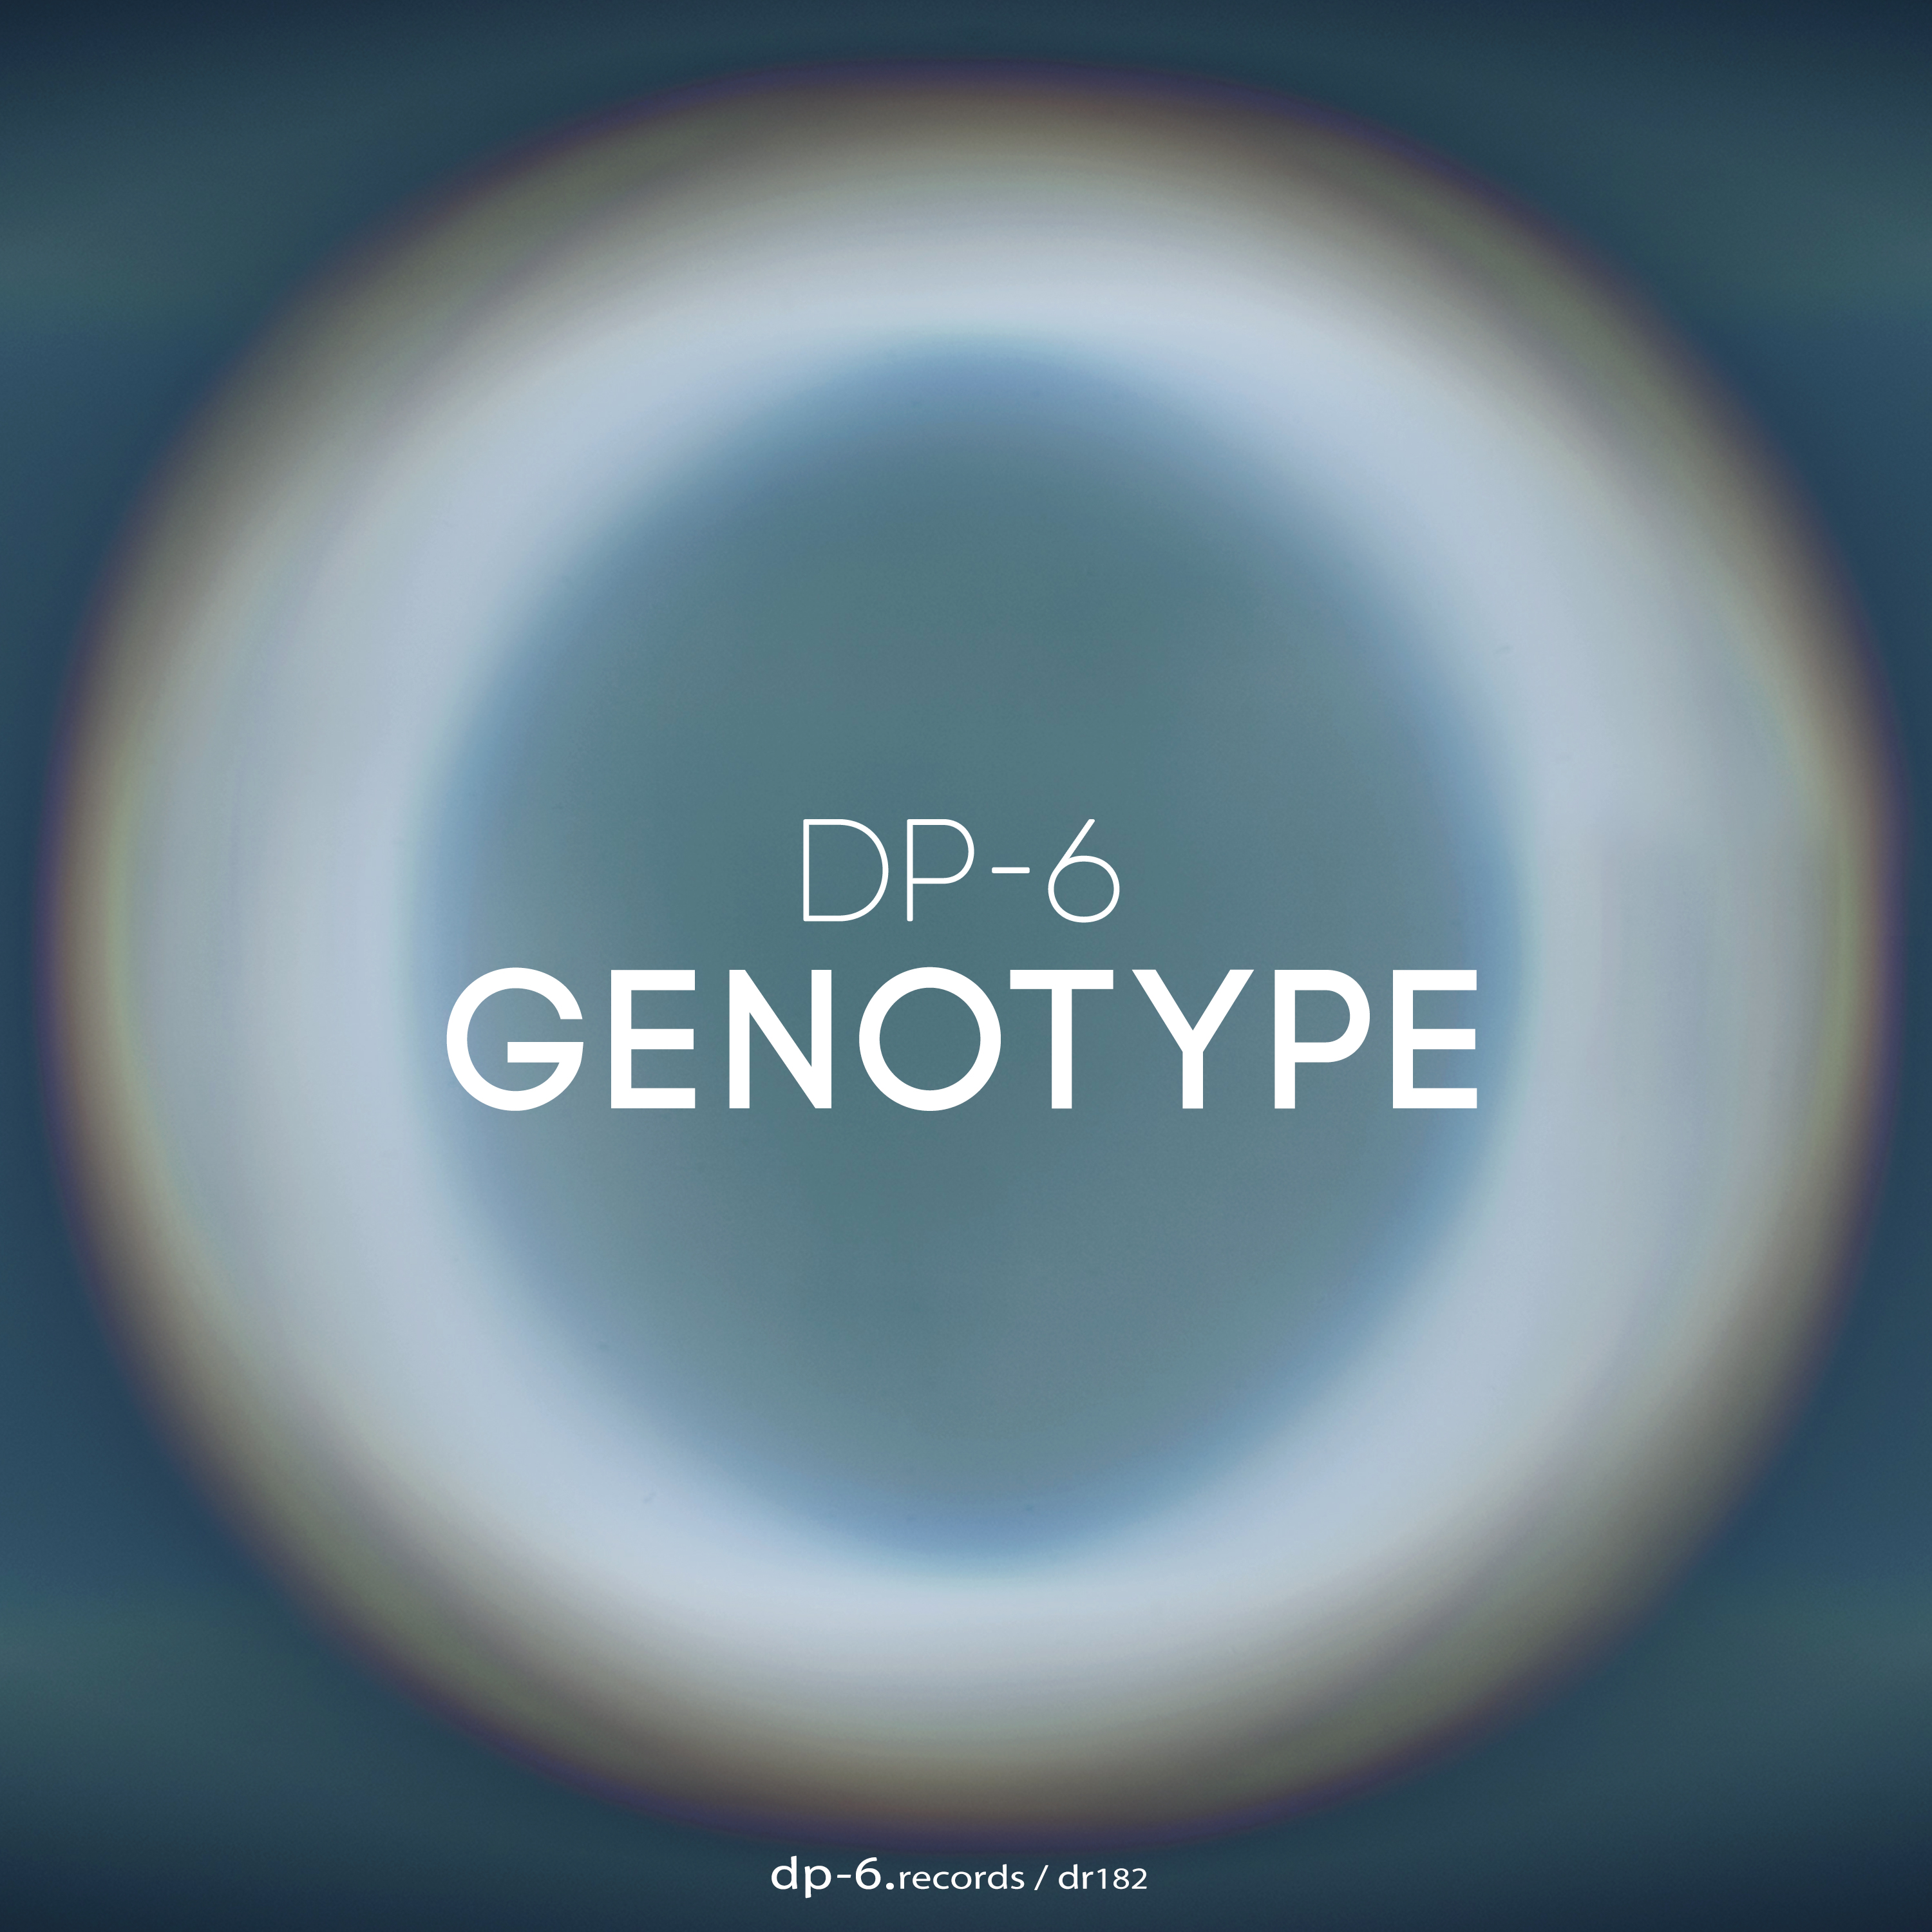 DP-6: Genotype